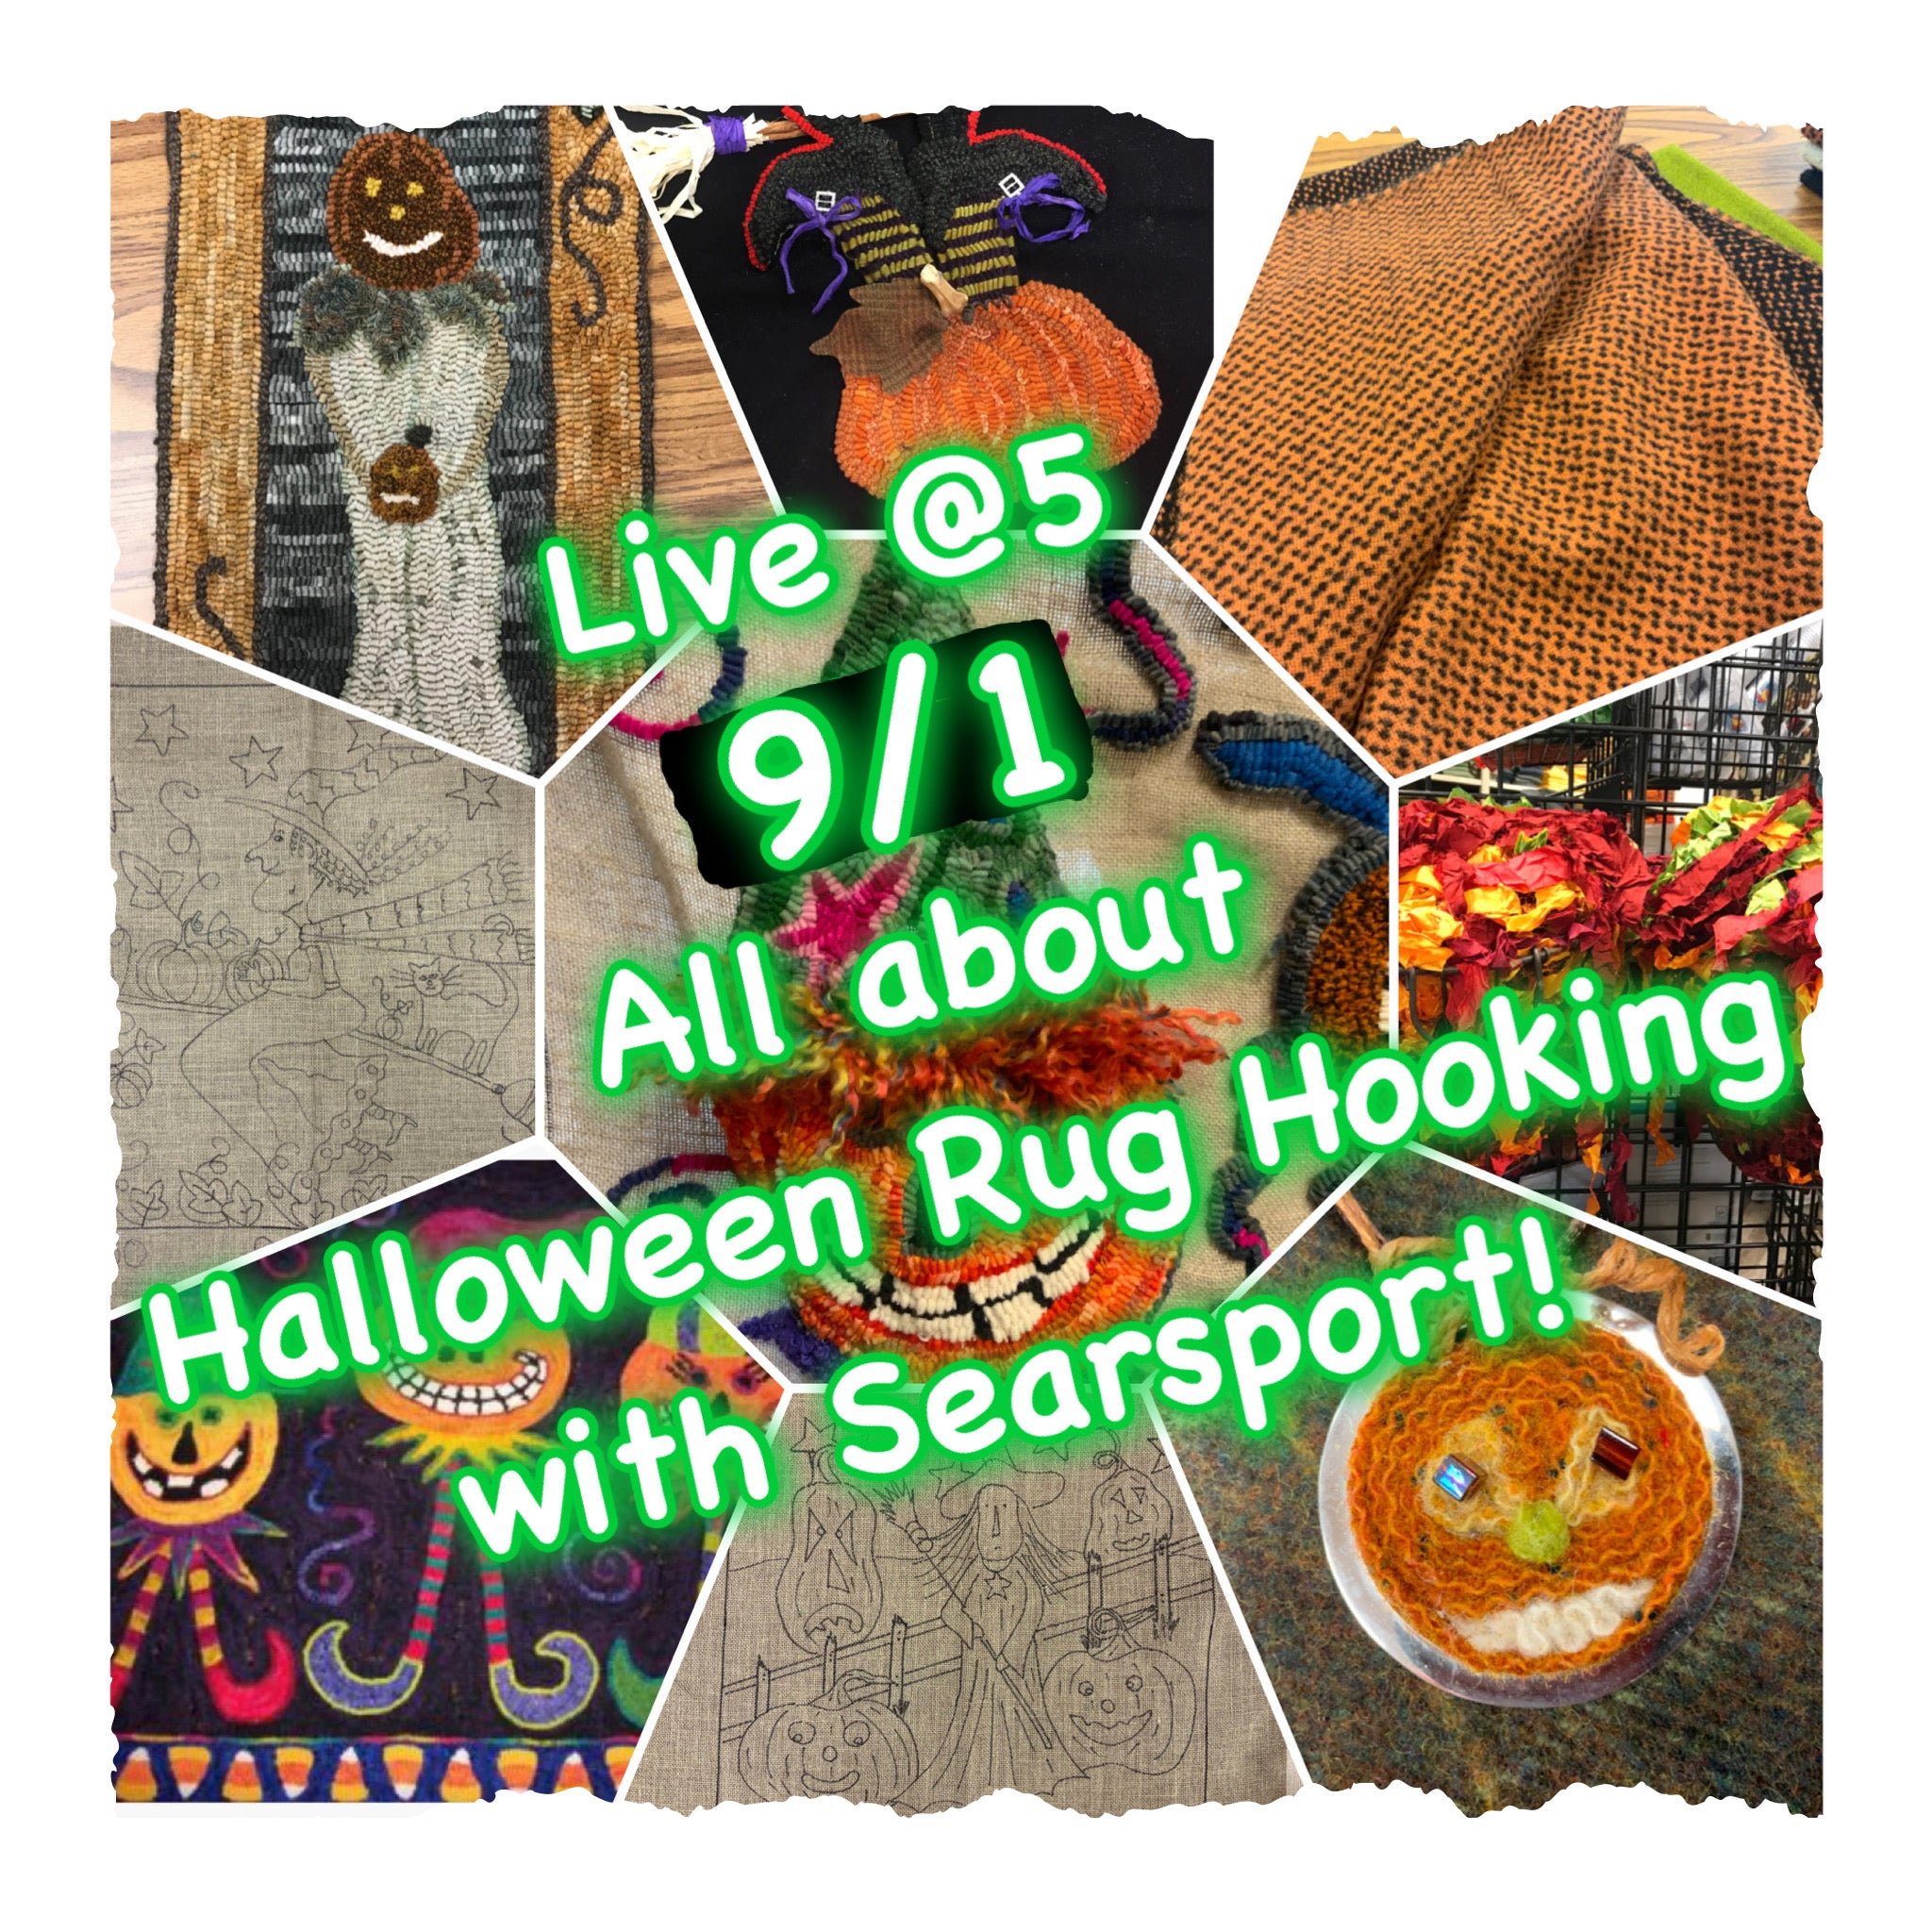 Rug Hooking for Halloween 5 O’clock Friday